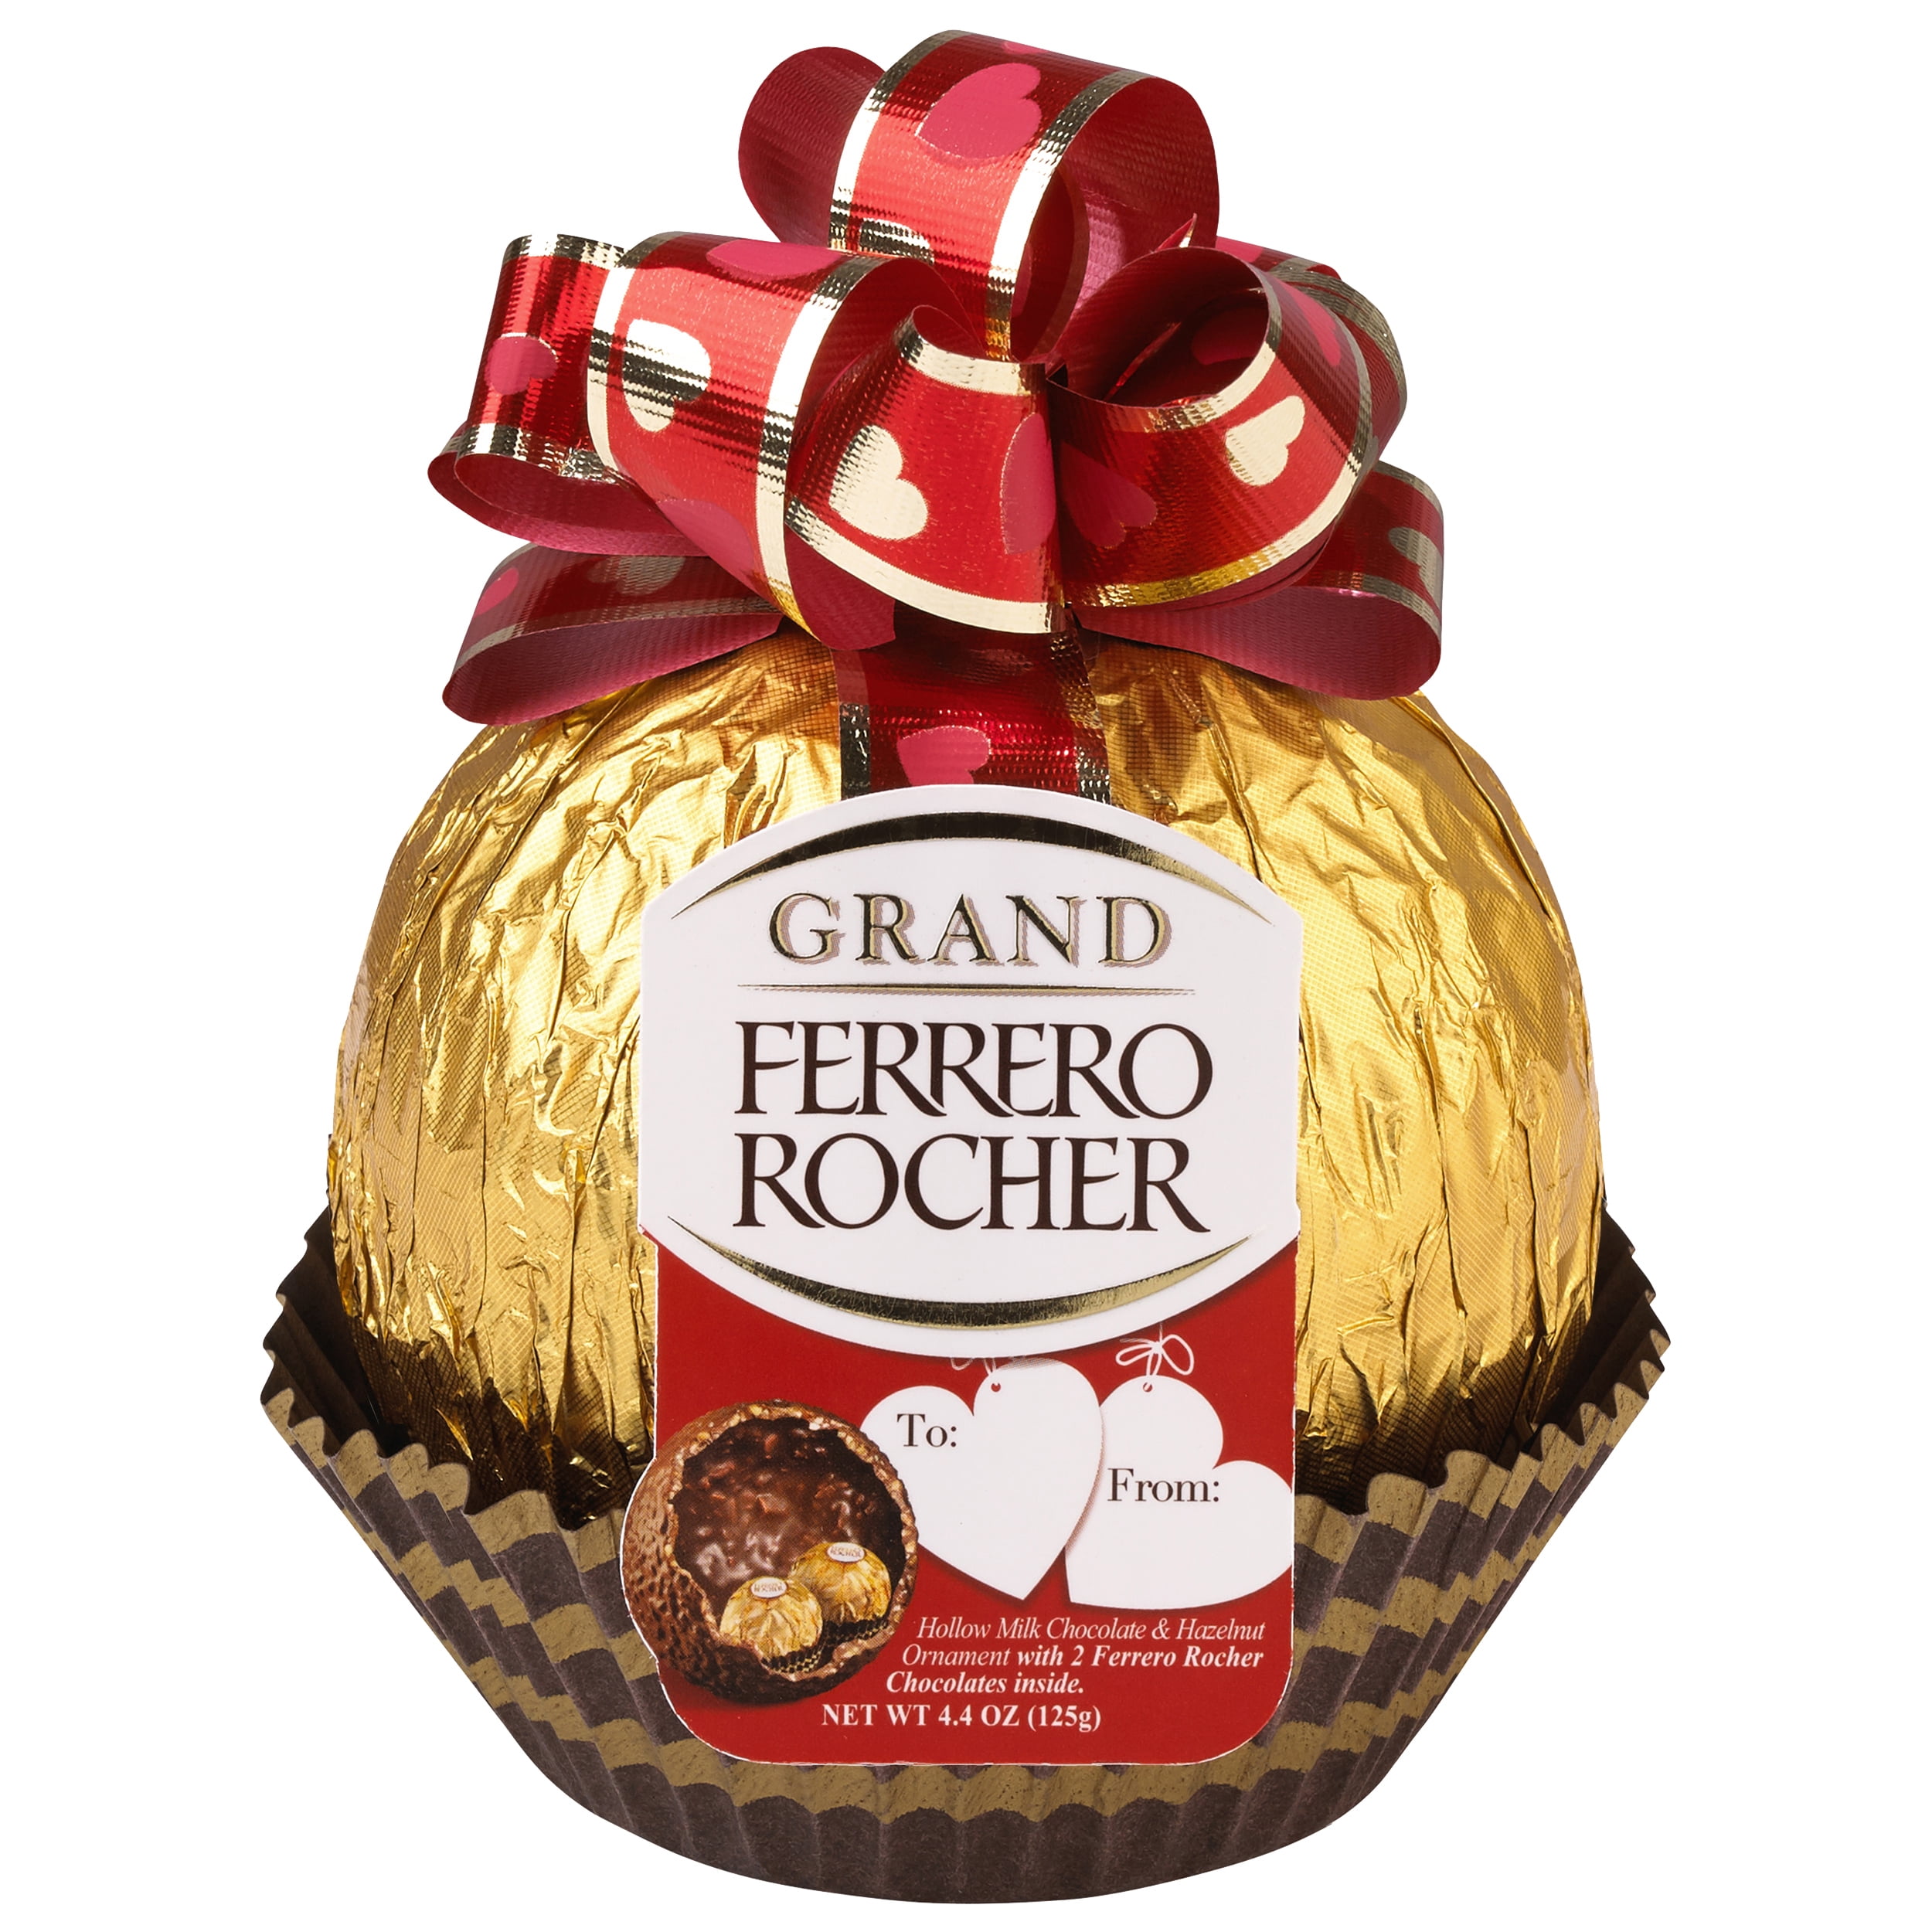 Ferrero Grand Ferrero Rocher Review